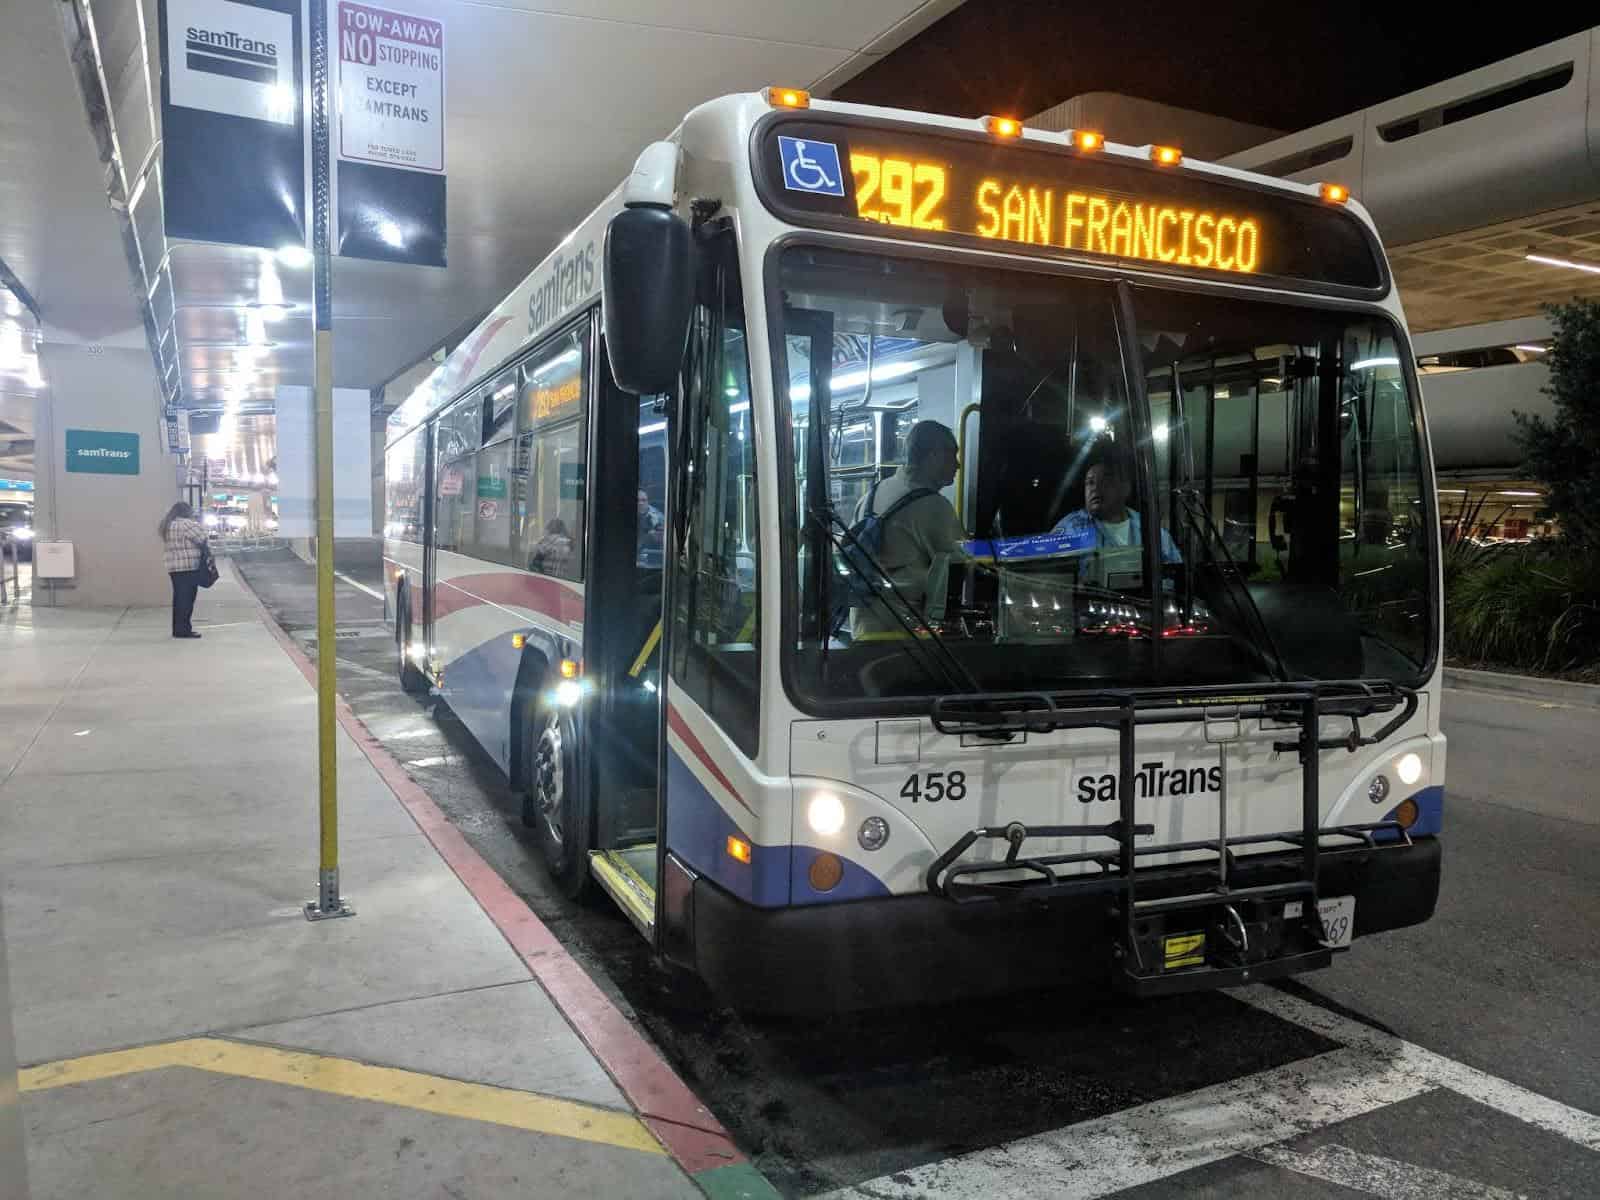 Từ sân bay, hành khách có thể bắt xe bus số 292 về trung tâm thành phố San Francisco